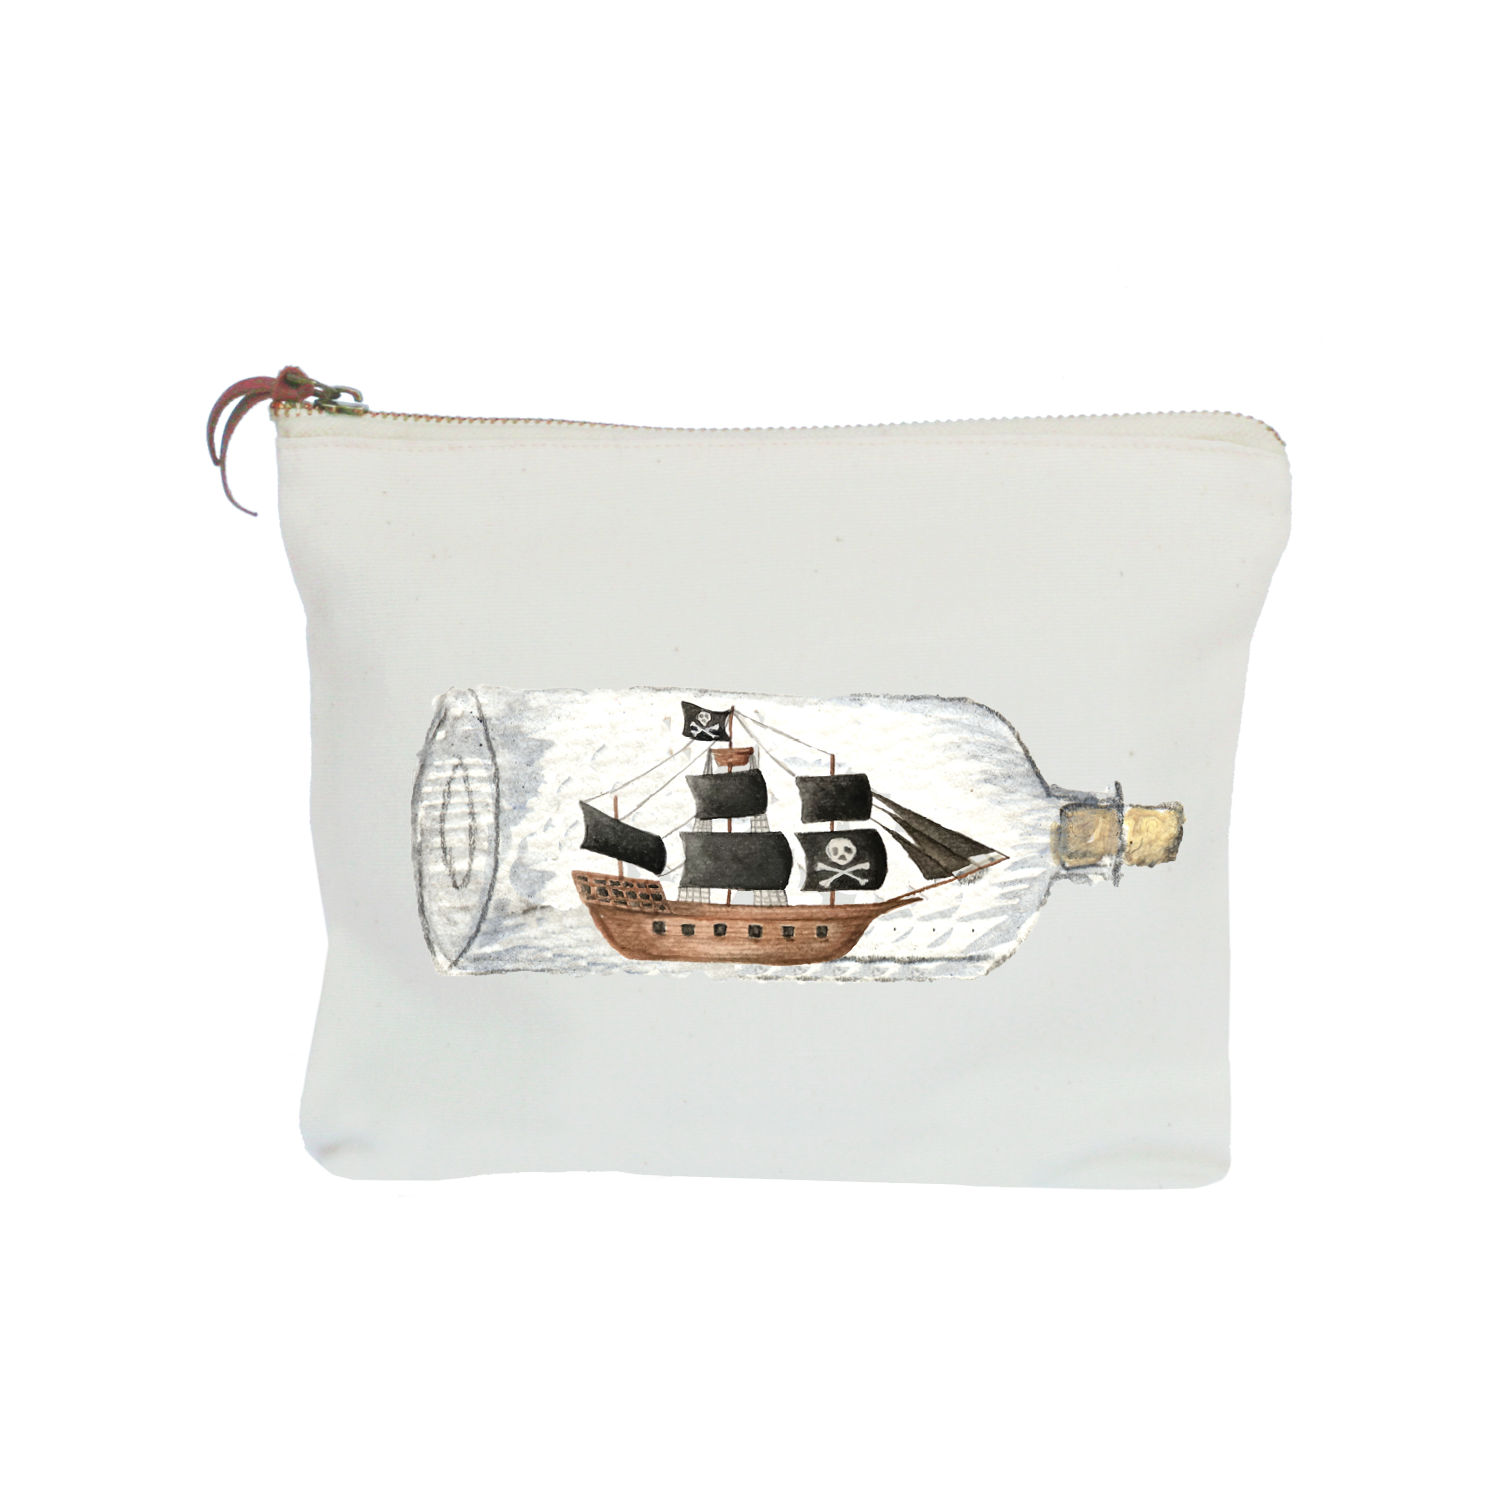 pirate ship in a bottle zipper pouch